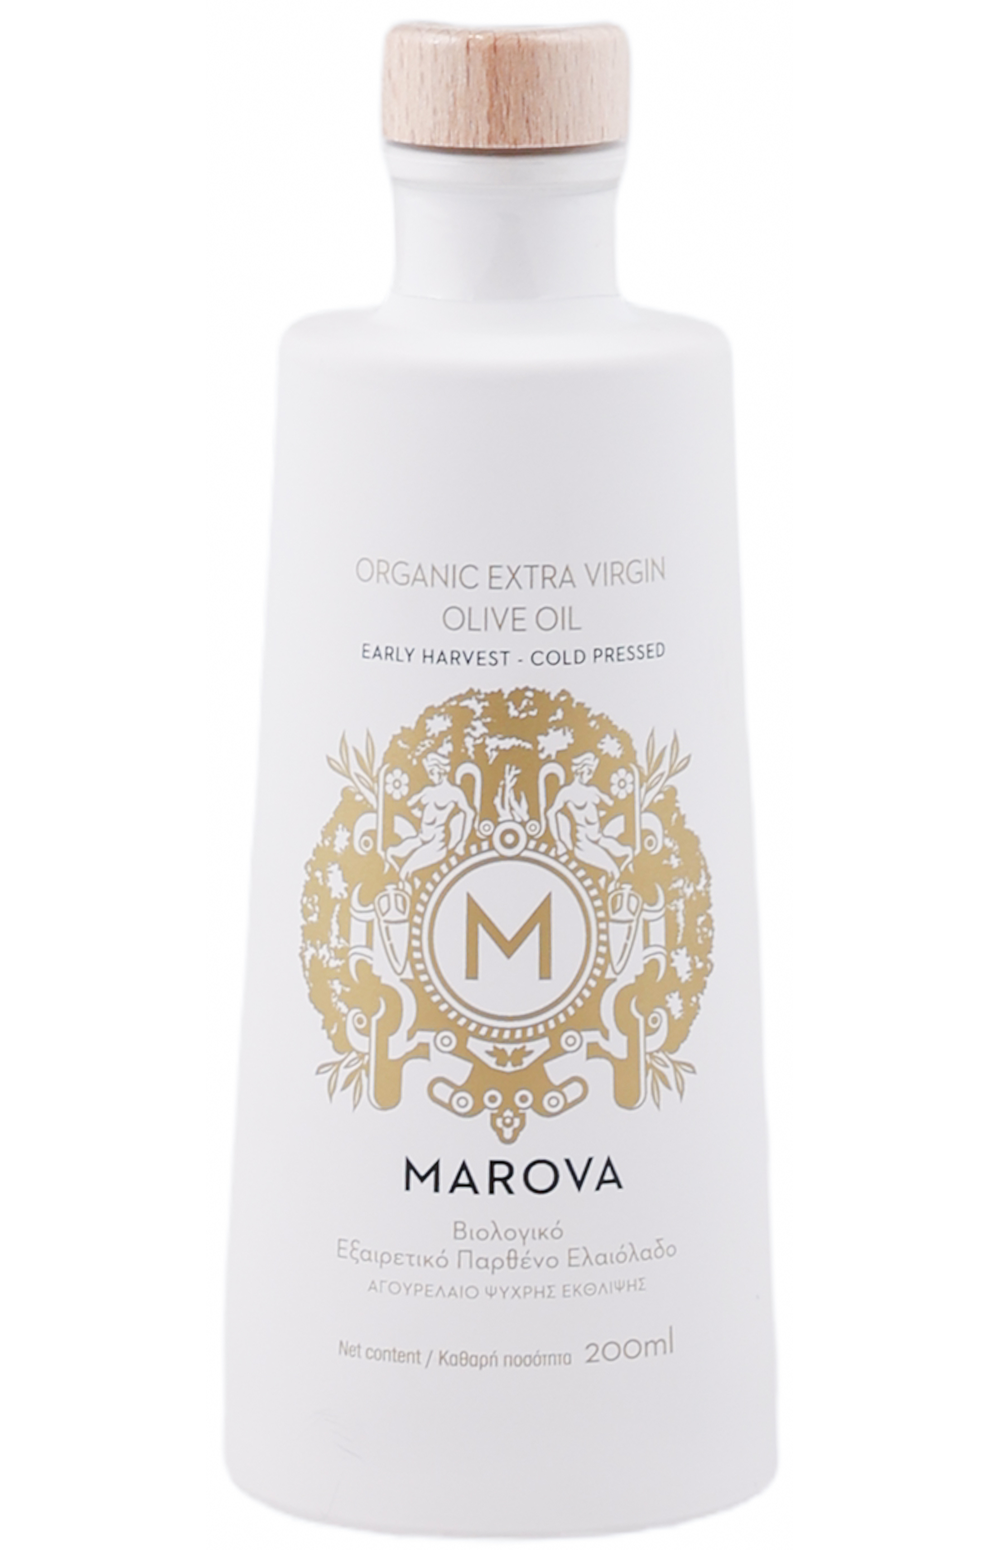 Marova Organic Extra Virgin Olive Oil